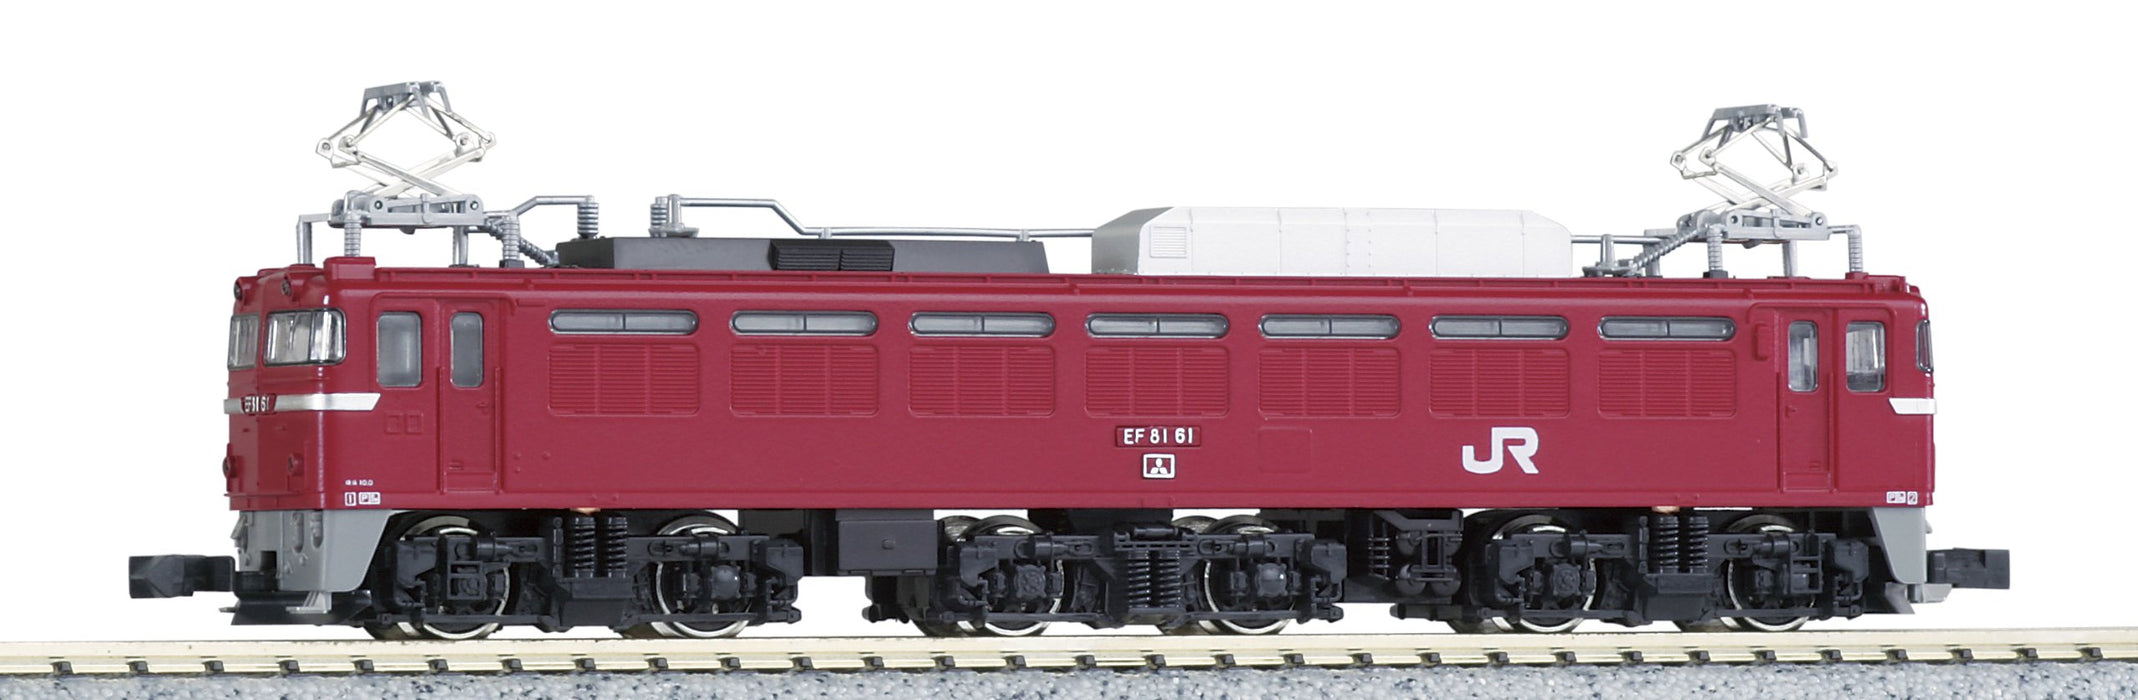 Train miniature Kato N Gauge 3021-6 Ef81 - Édition couleur Jr East Japan